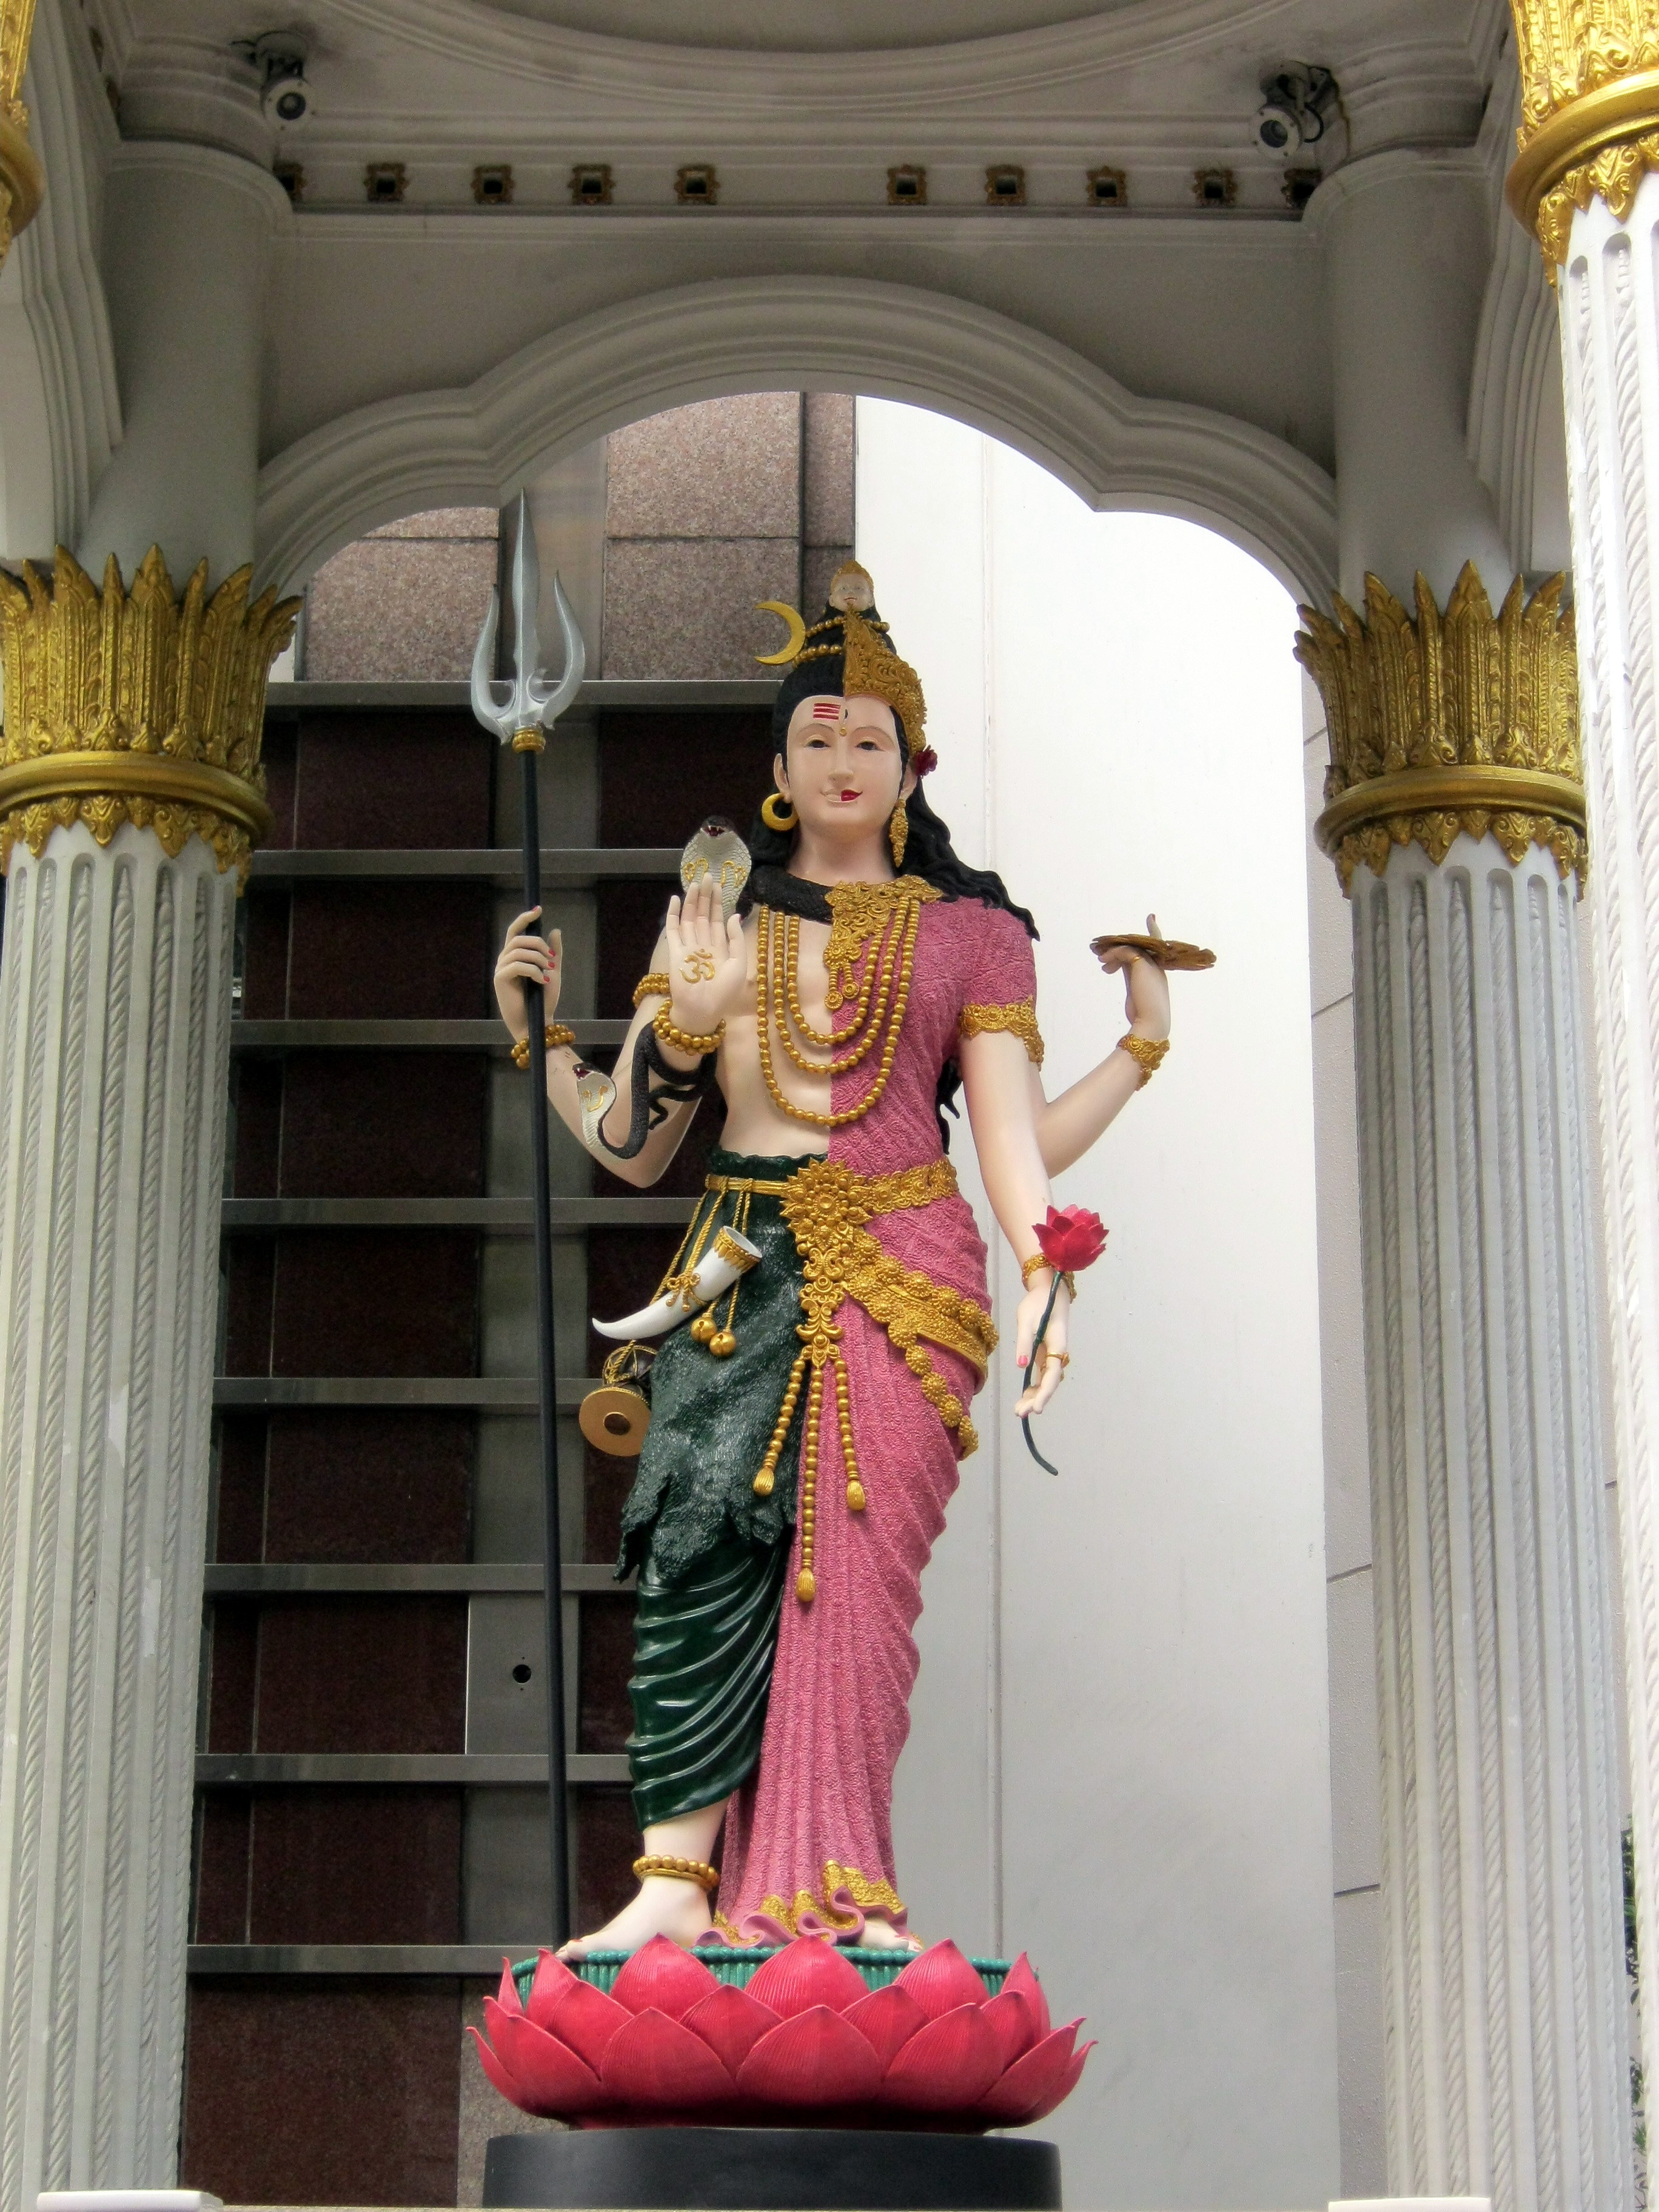 Ardhanarishvara at Jasmine City